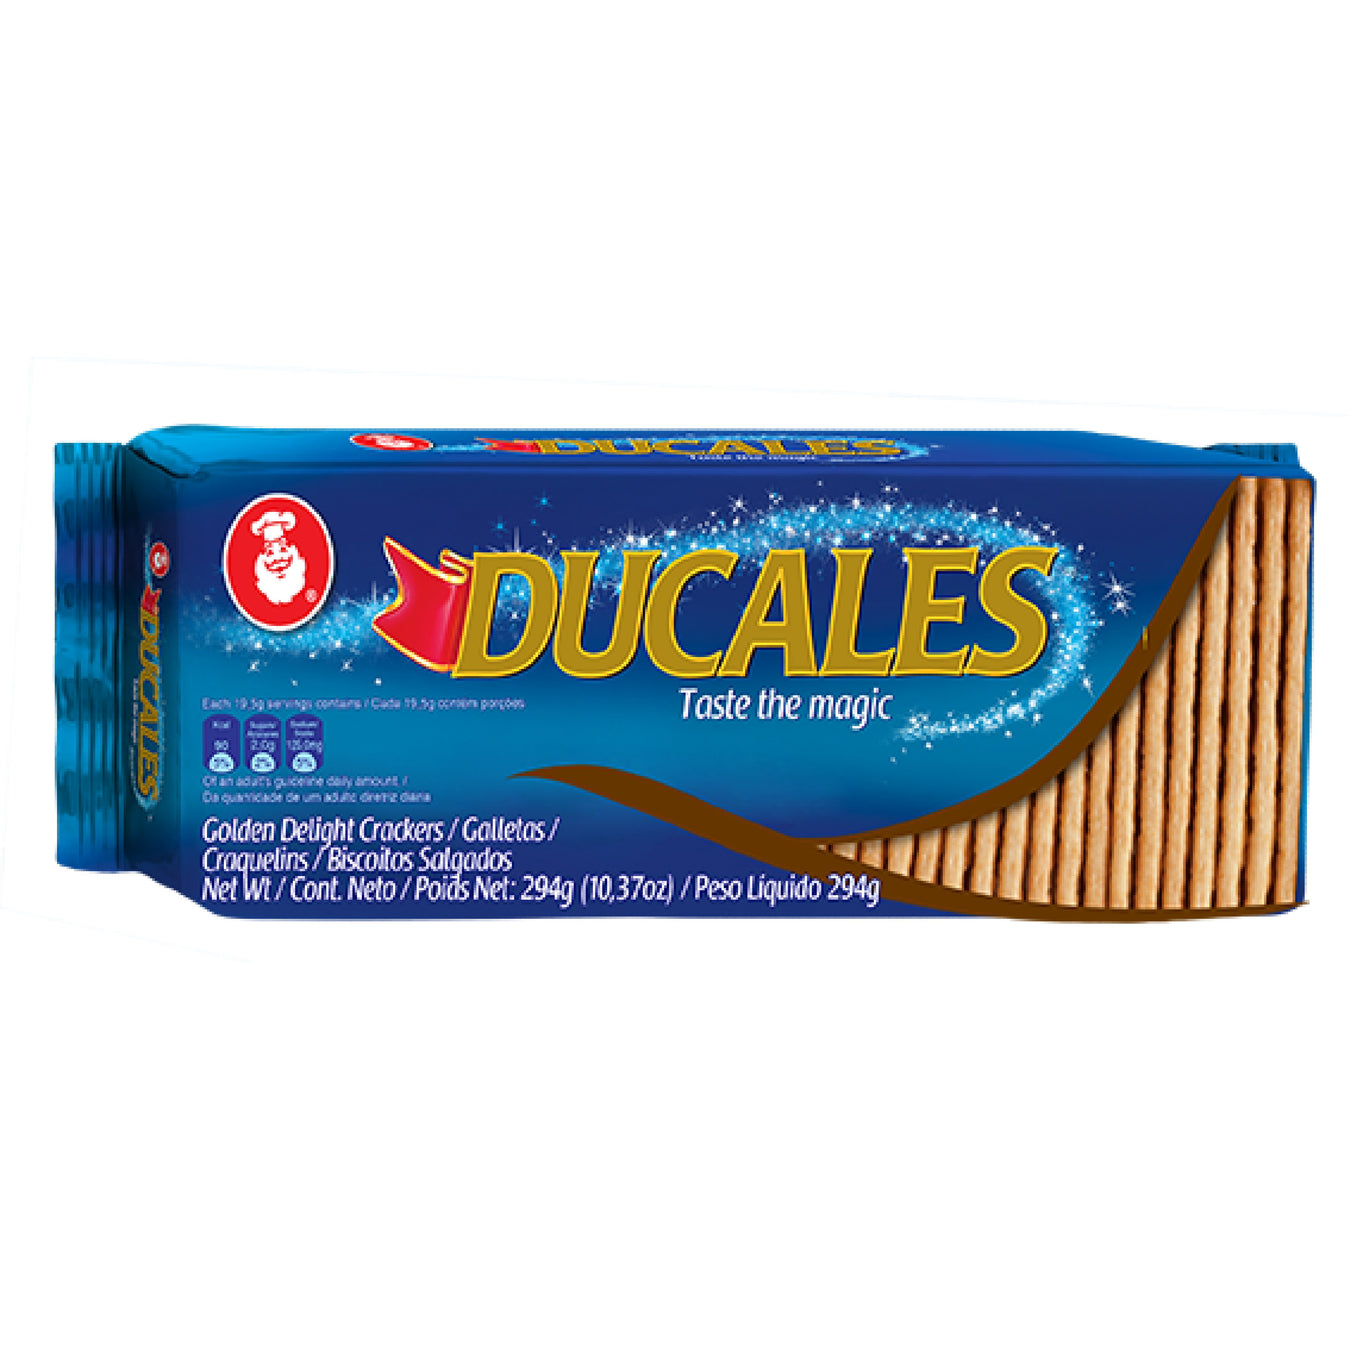 Ducales